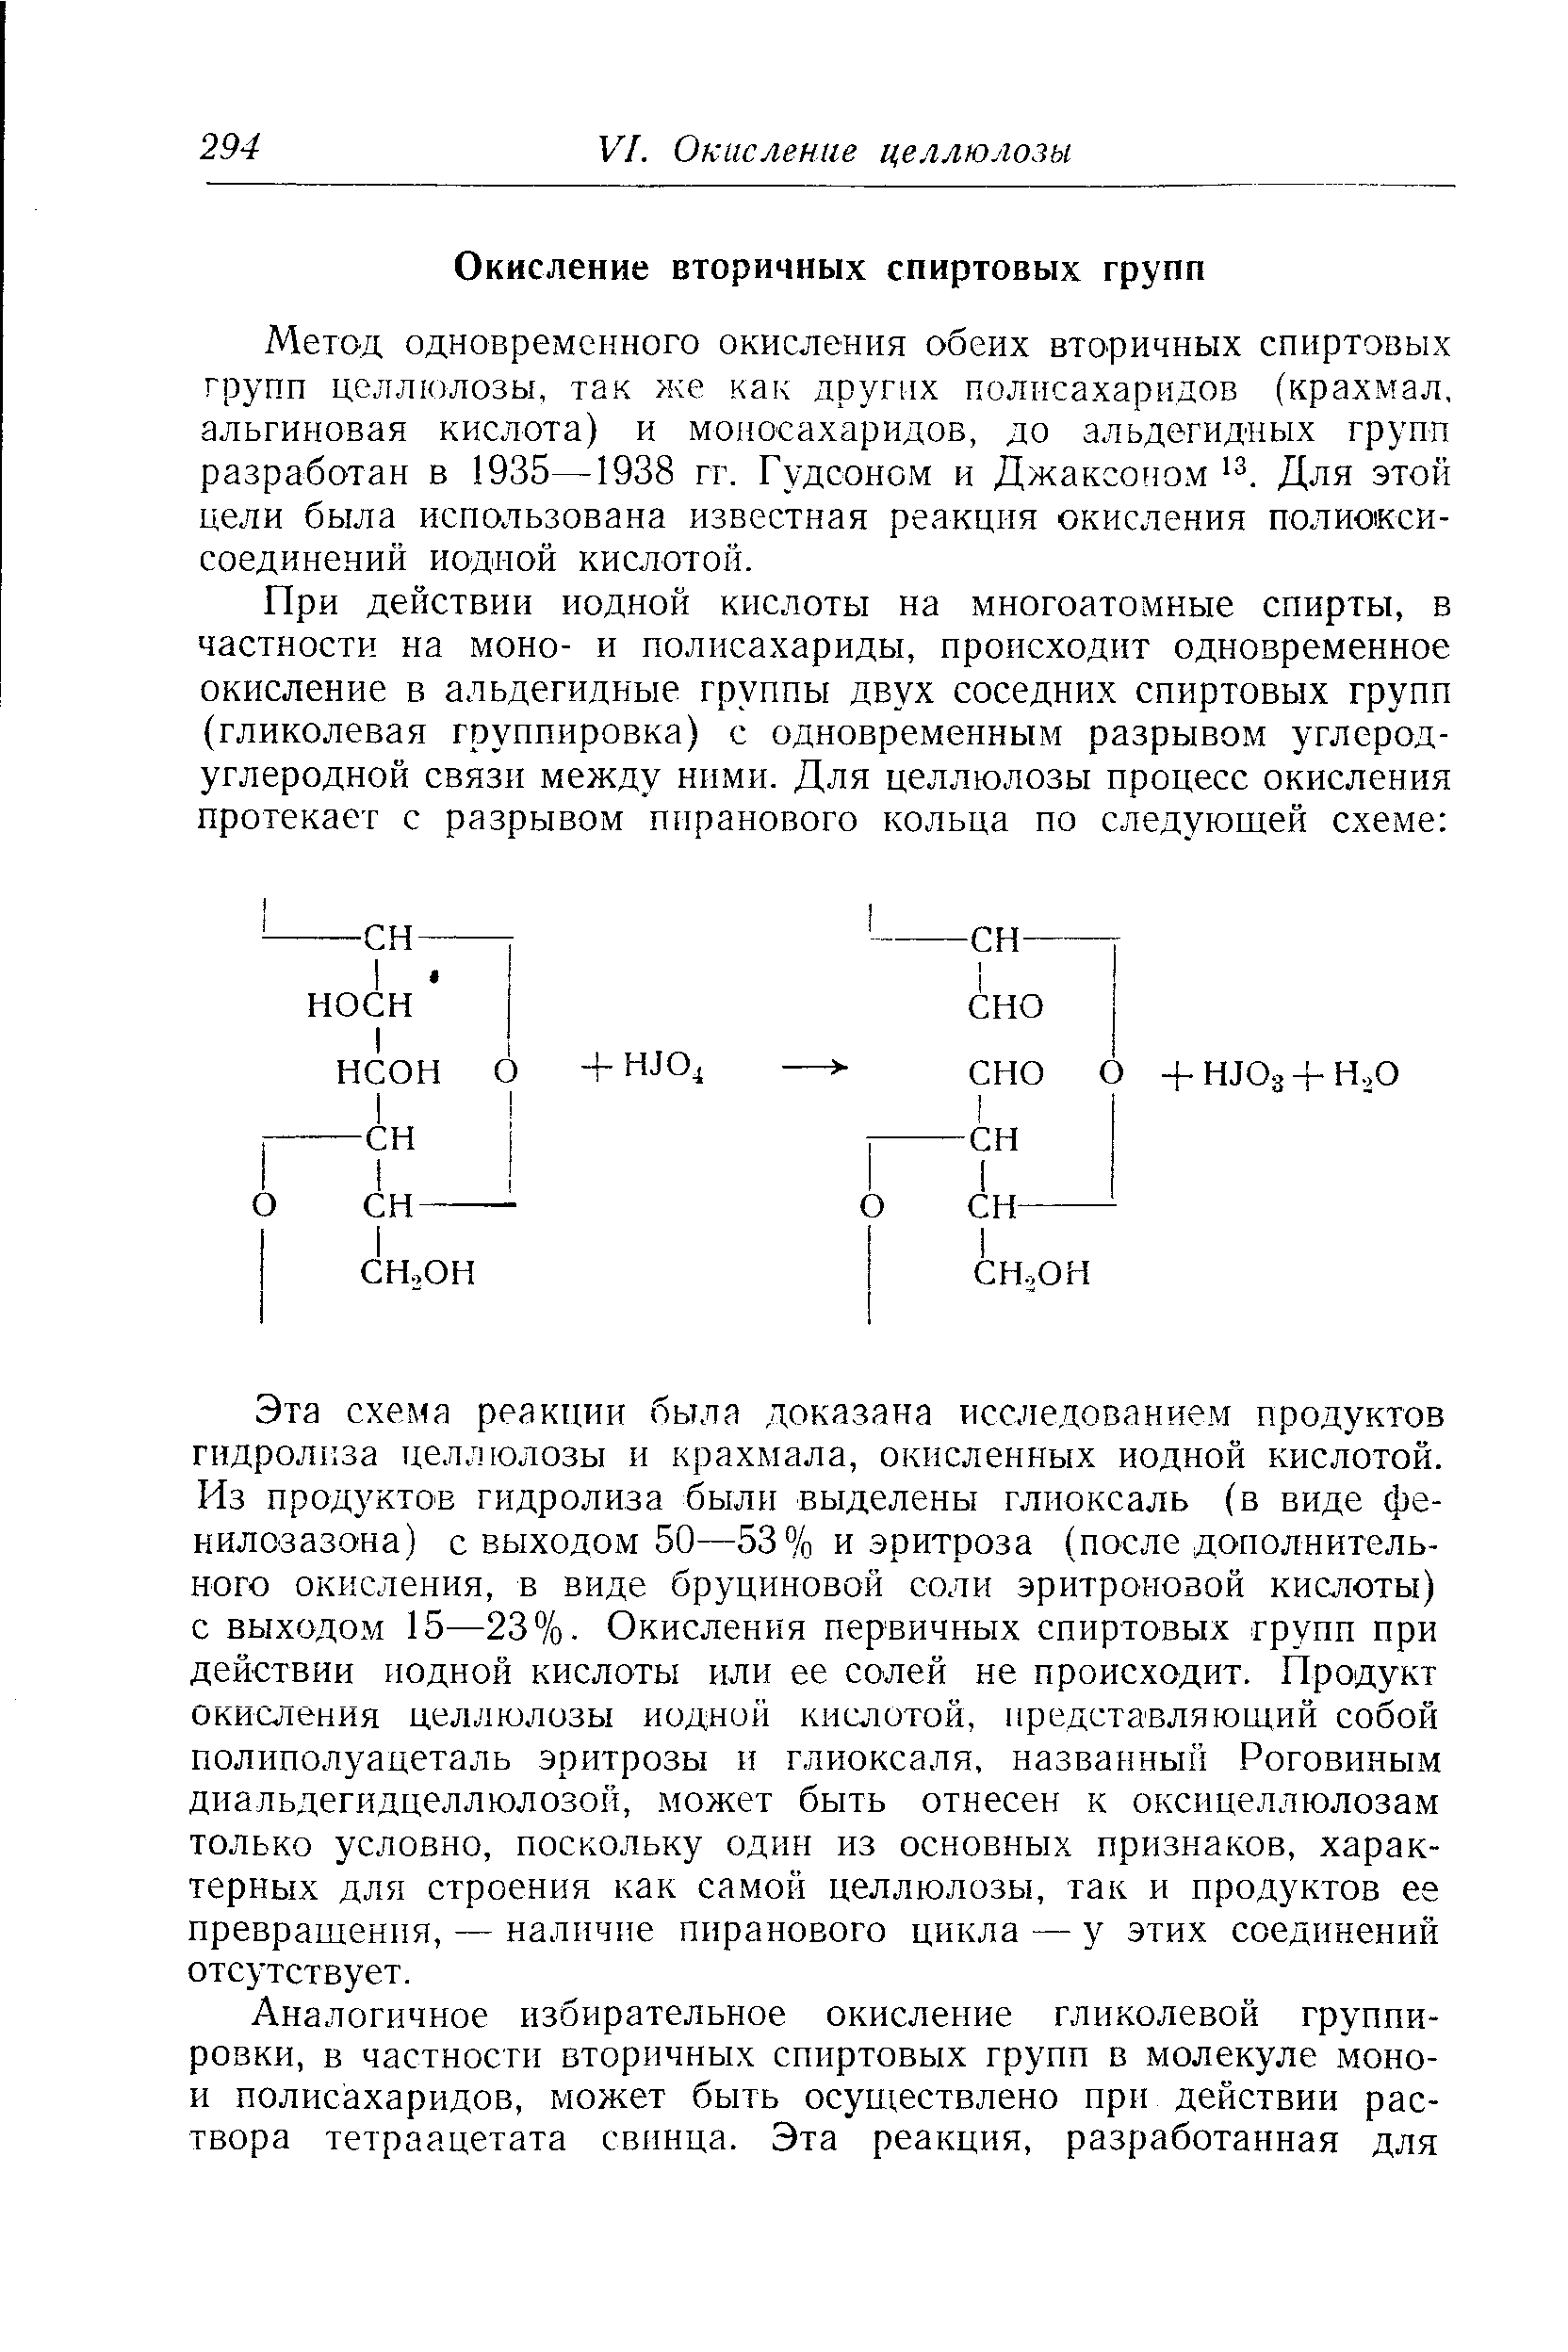 Метод одновременного окисления обеих вторичных спиртовых групп целлюлозы, так же как других полисахаридов (крахмал, альгиновая кислота) и моносахаридов, до альдегидных групп разработан в 1935—1938 гг. Гудсоном и Джаксоном з. Для этой цели была использована известная реакция окисления полиоксисоединений йодной кислотой.